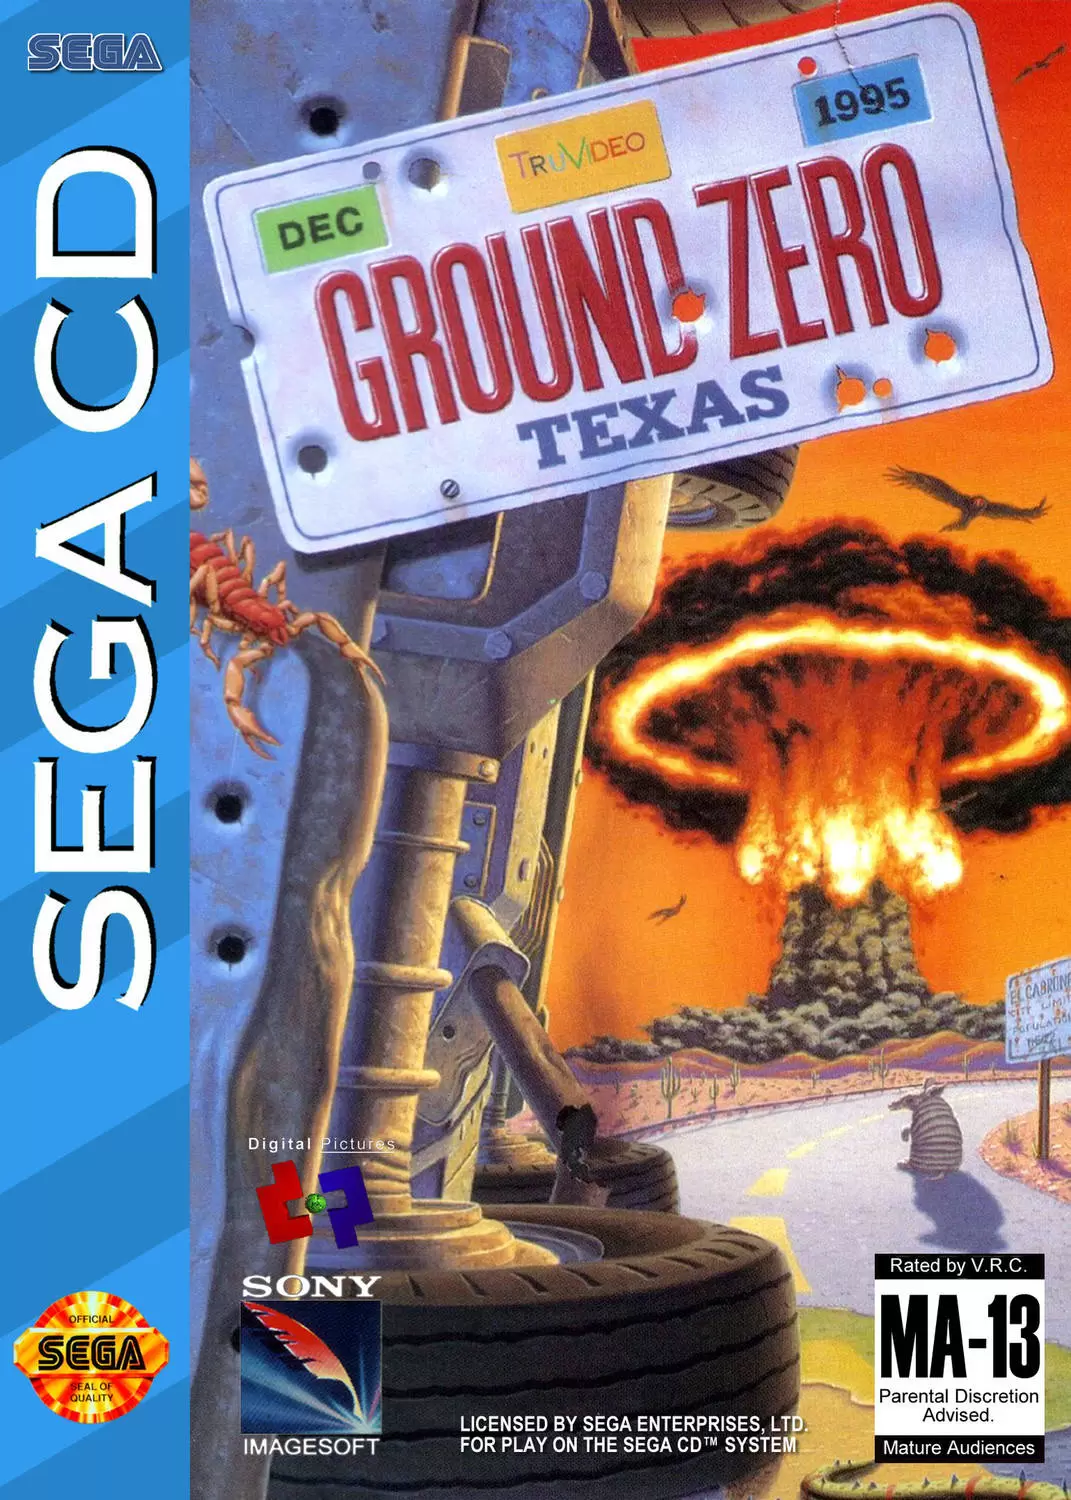 SEGA Mega CD Games - Ground Zero: Texas